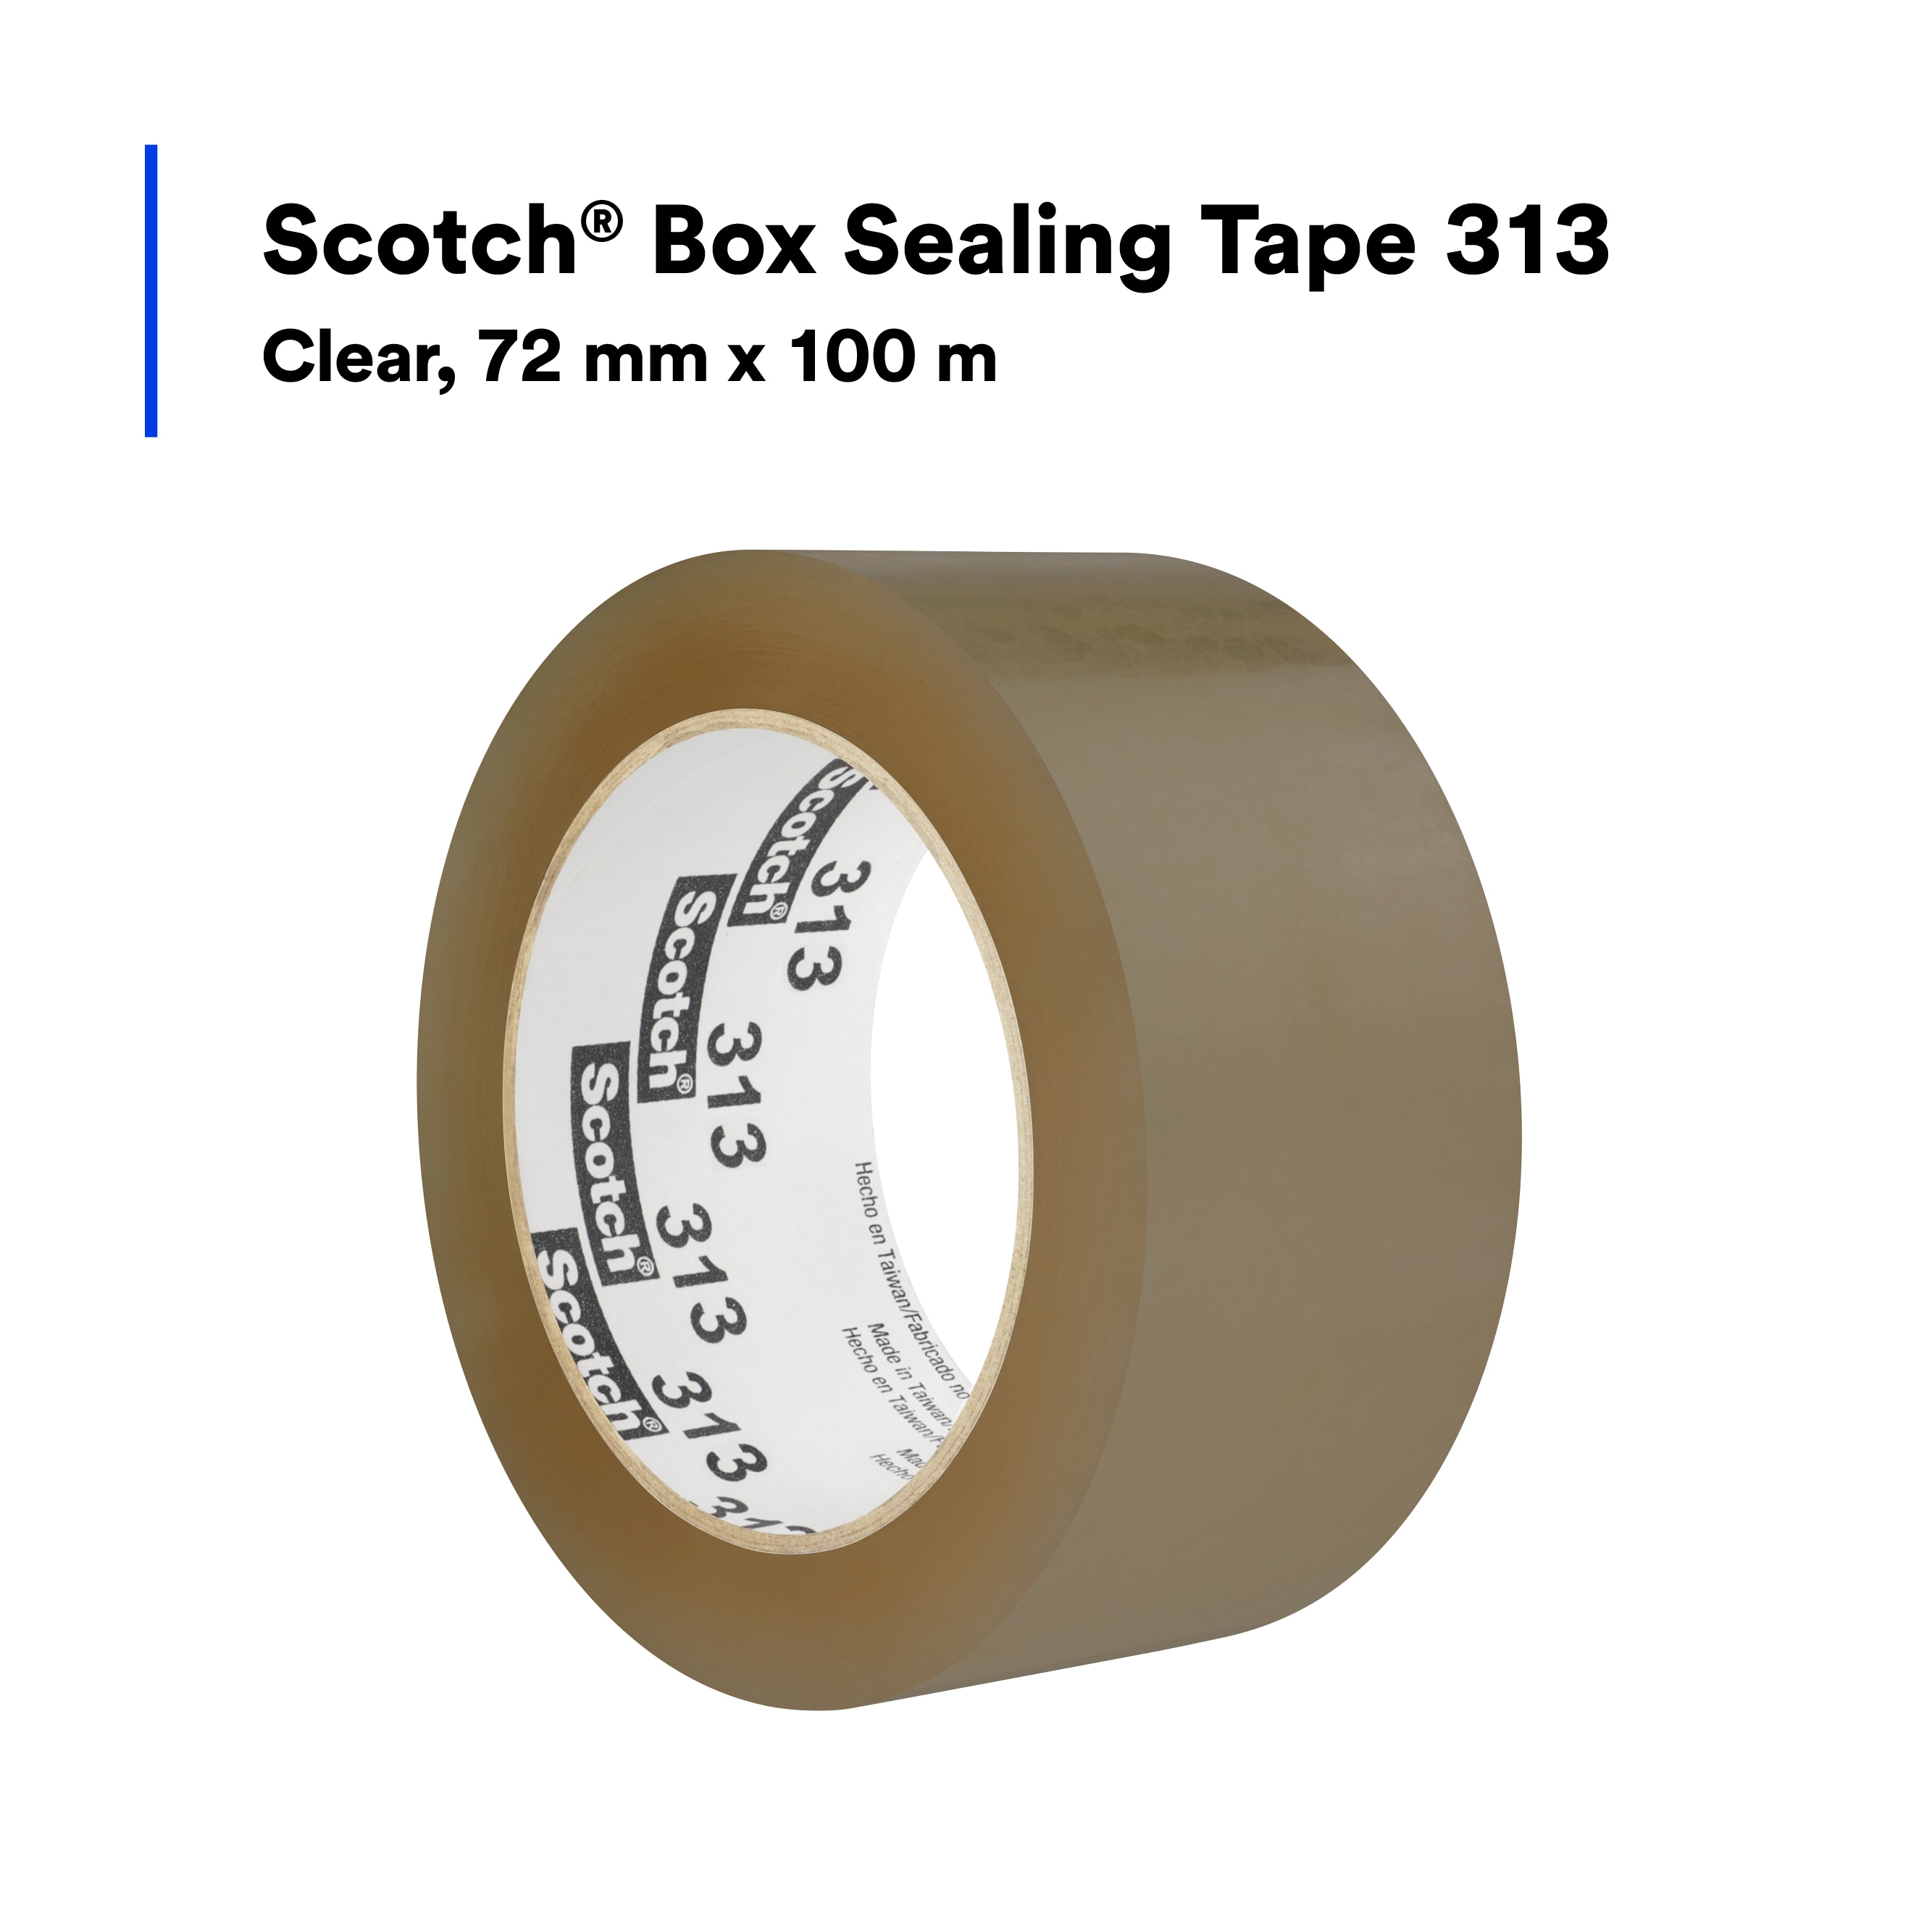 SKU 7100242443 | Scotch® Box Sealing Tape 313